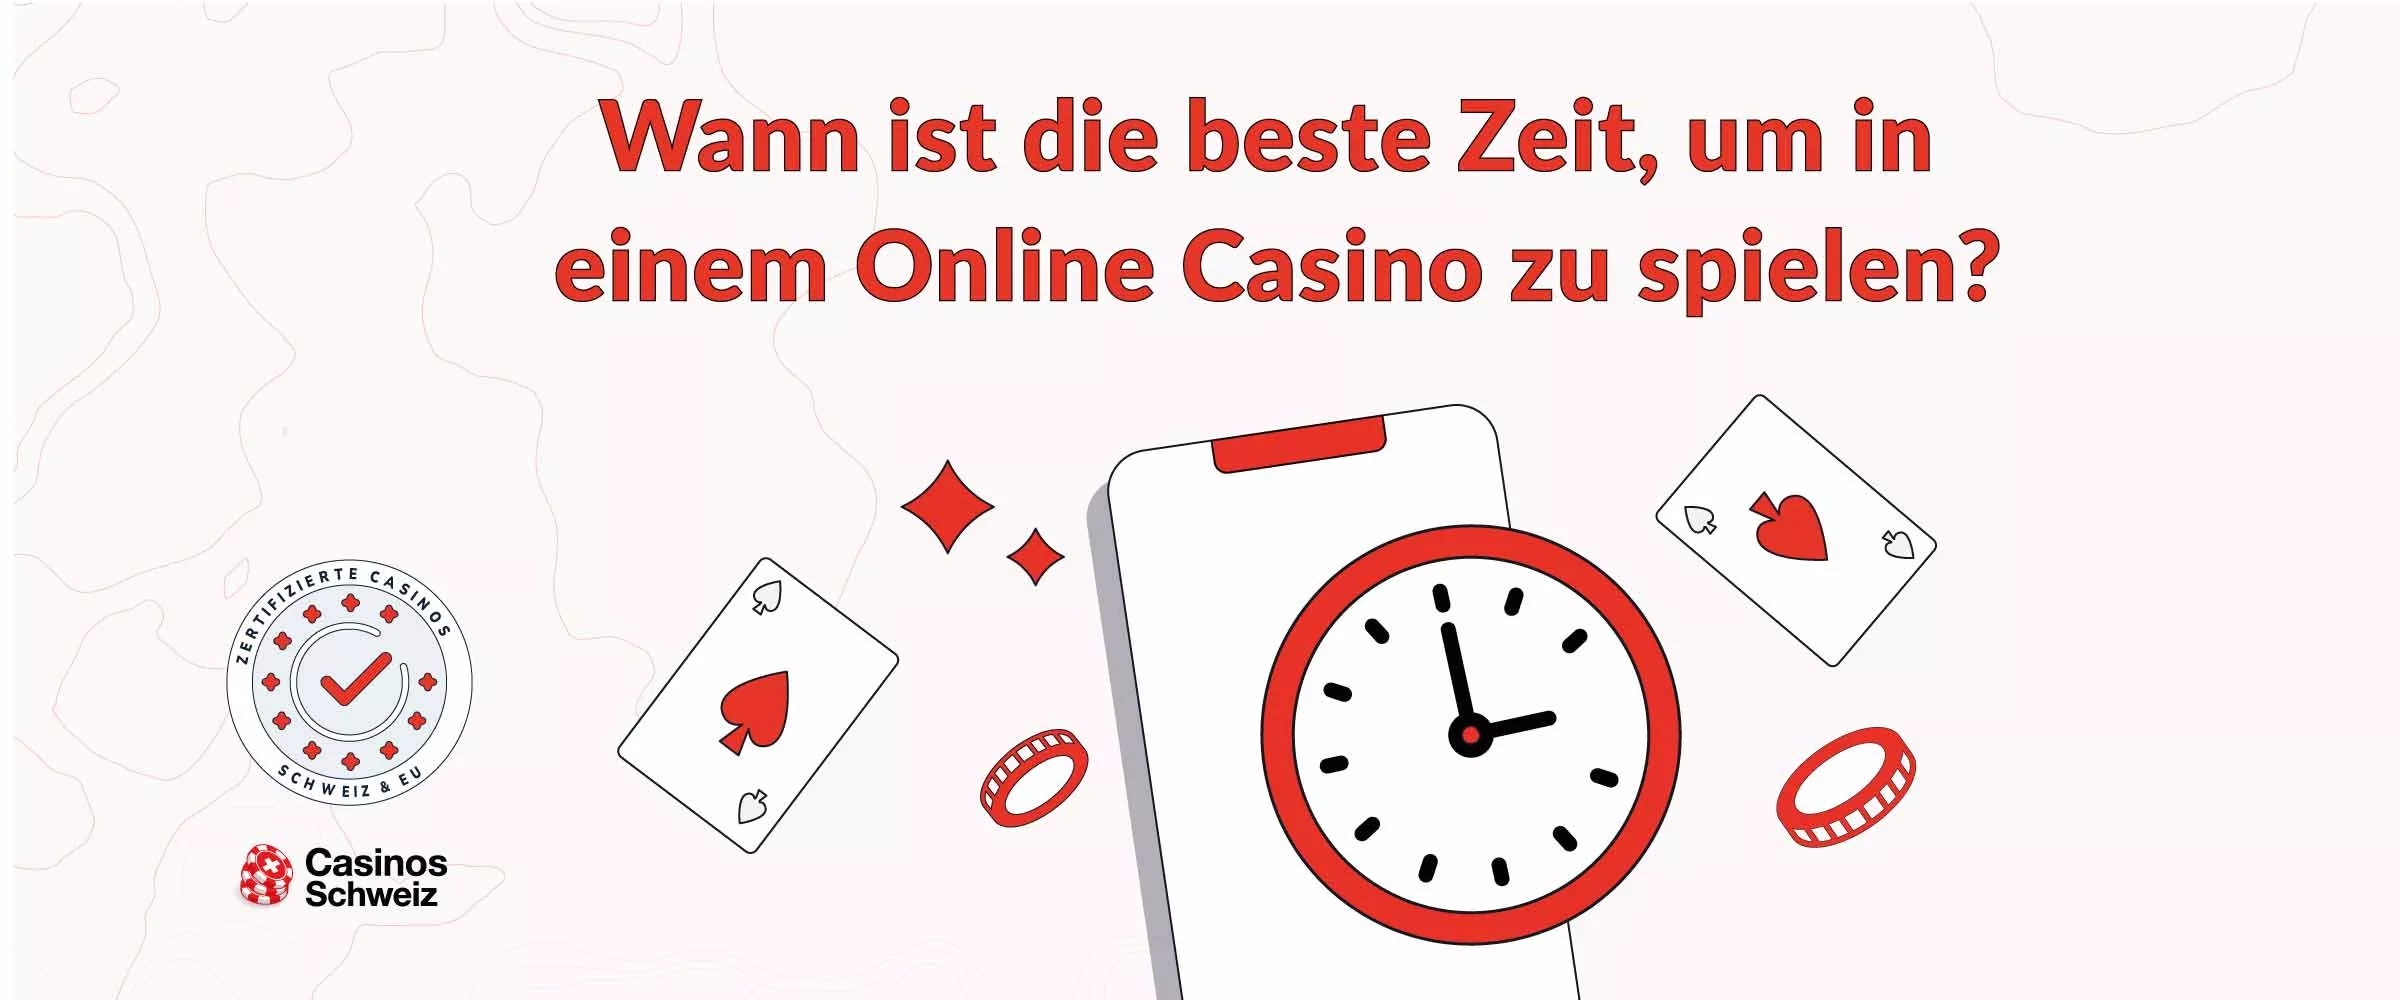 Beste Zeit für Online Casino